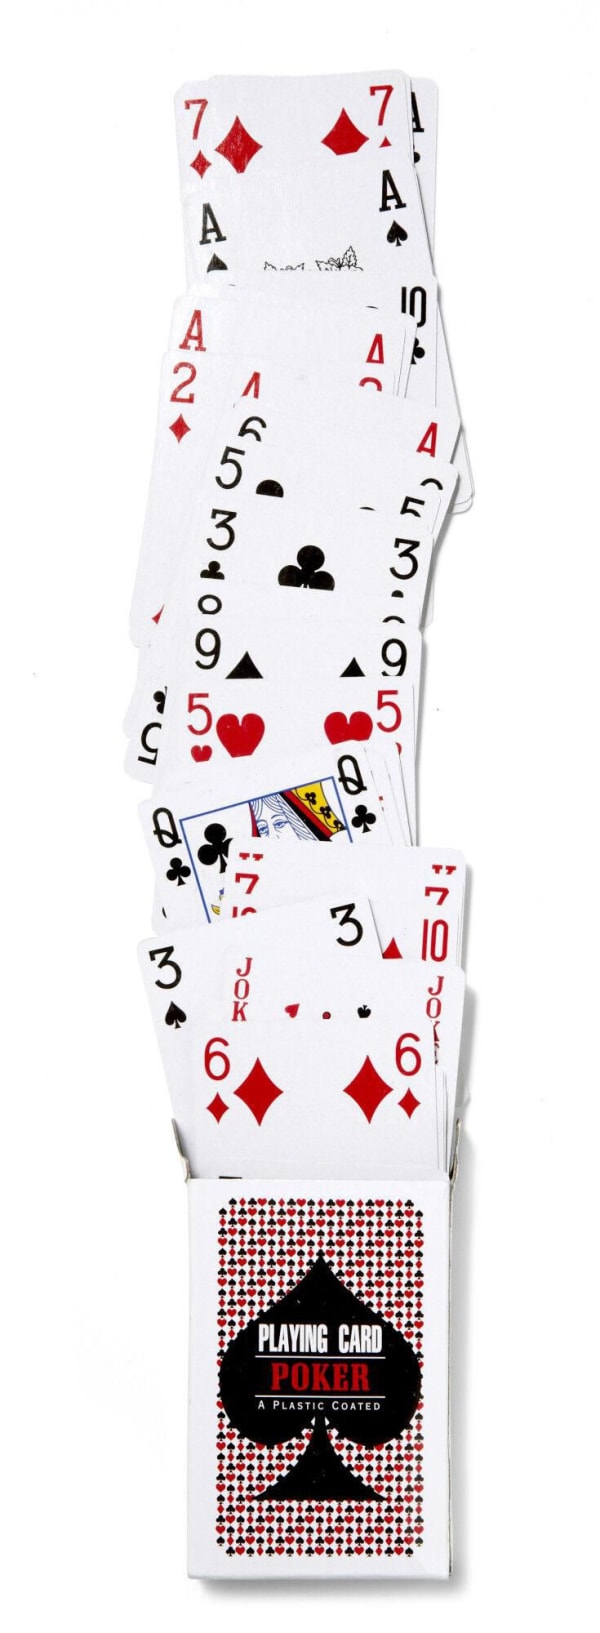 Spielkarten-Winner-Papier-Frontansicht-1